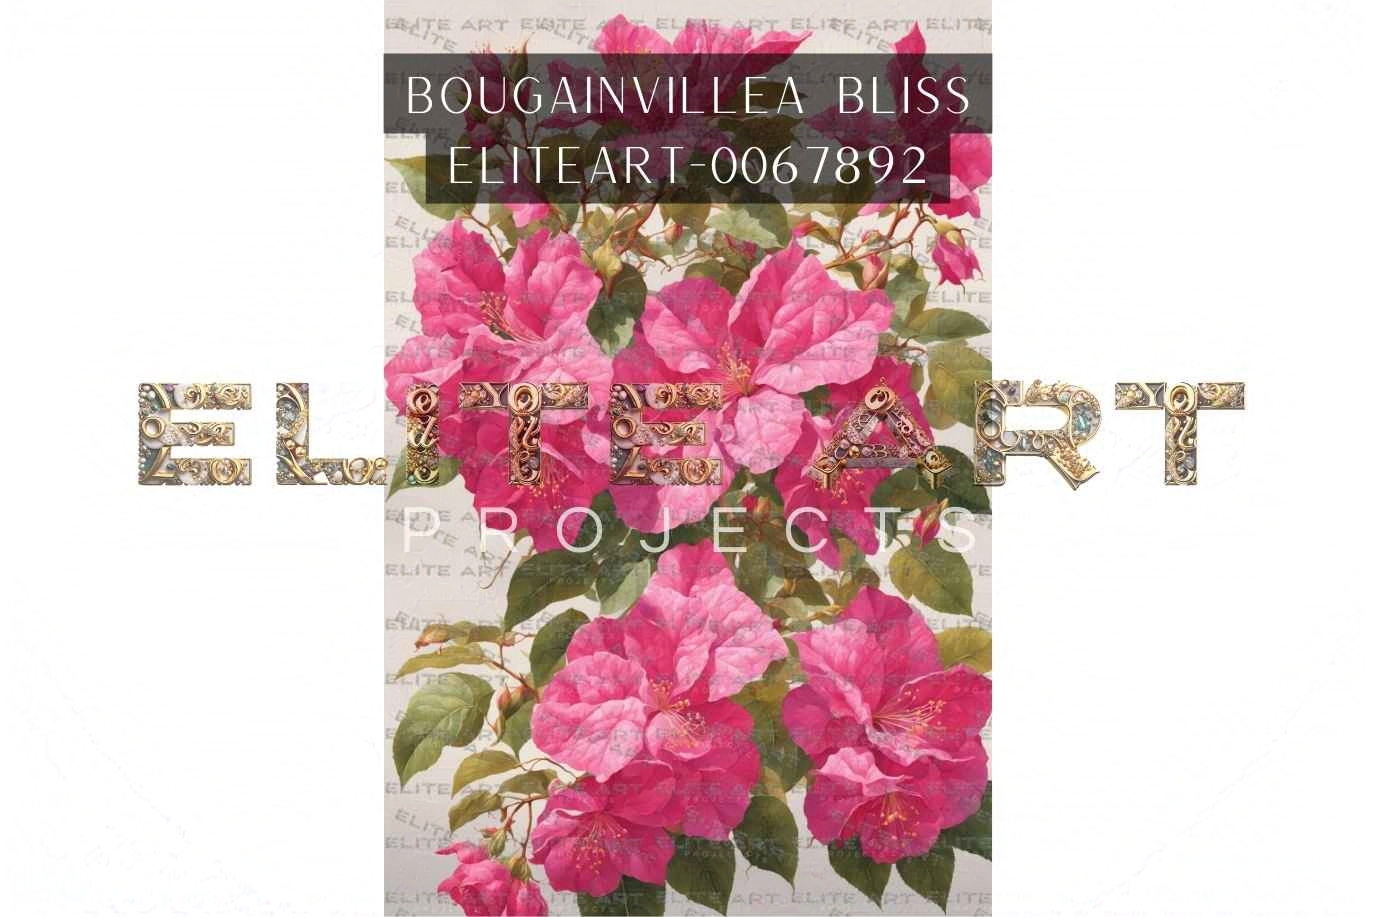 Bougainvillea Bliss flower